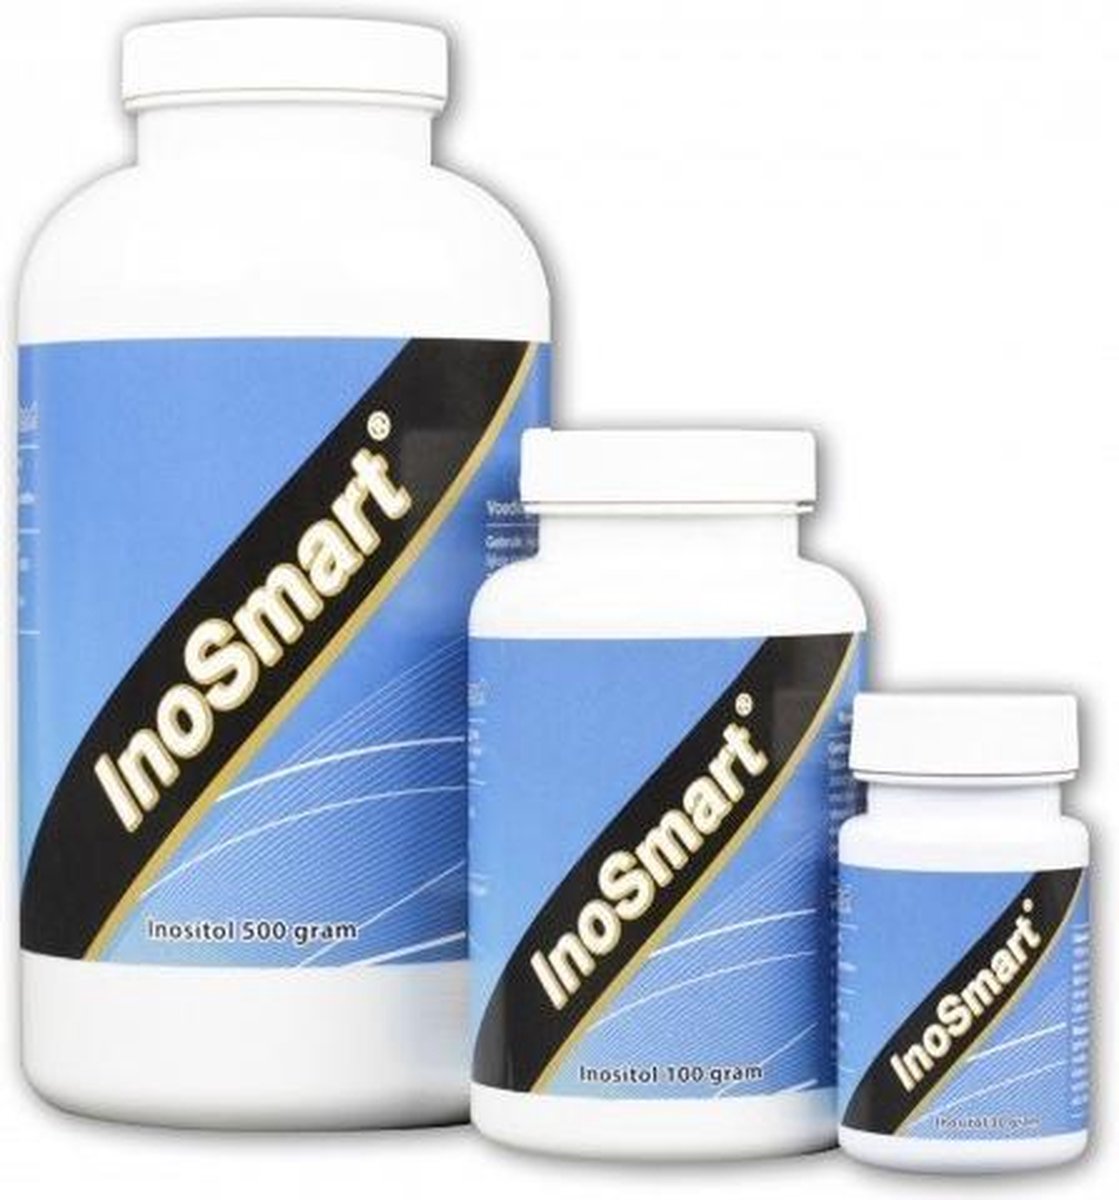 Inosmart - Inositol 30g - McSmart